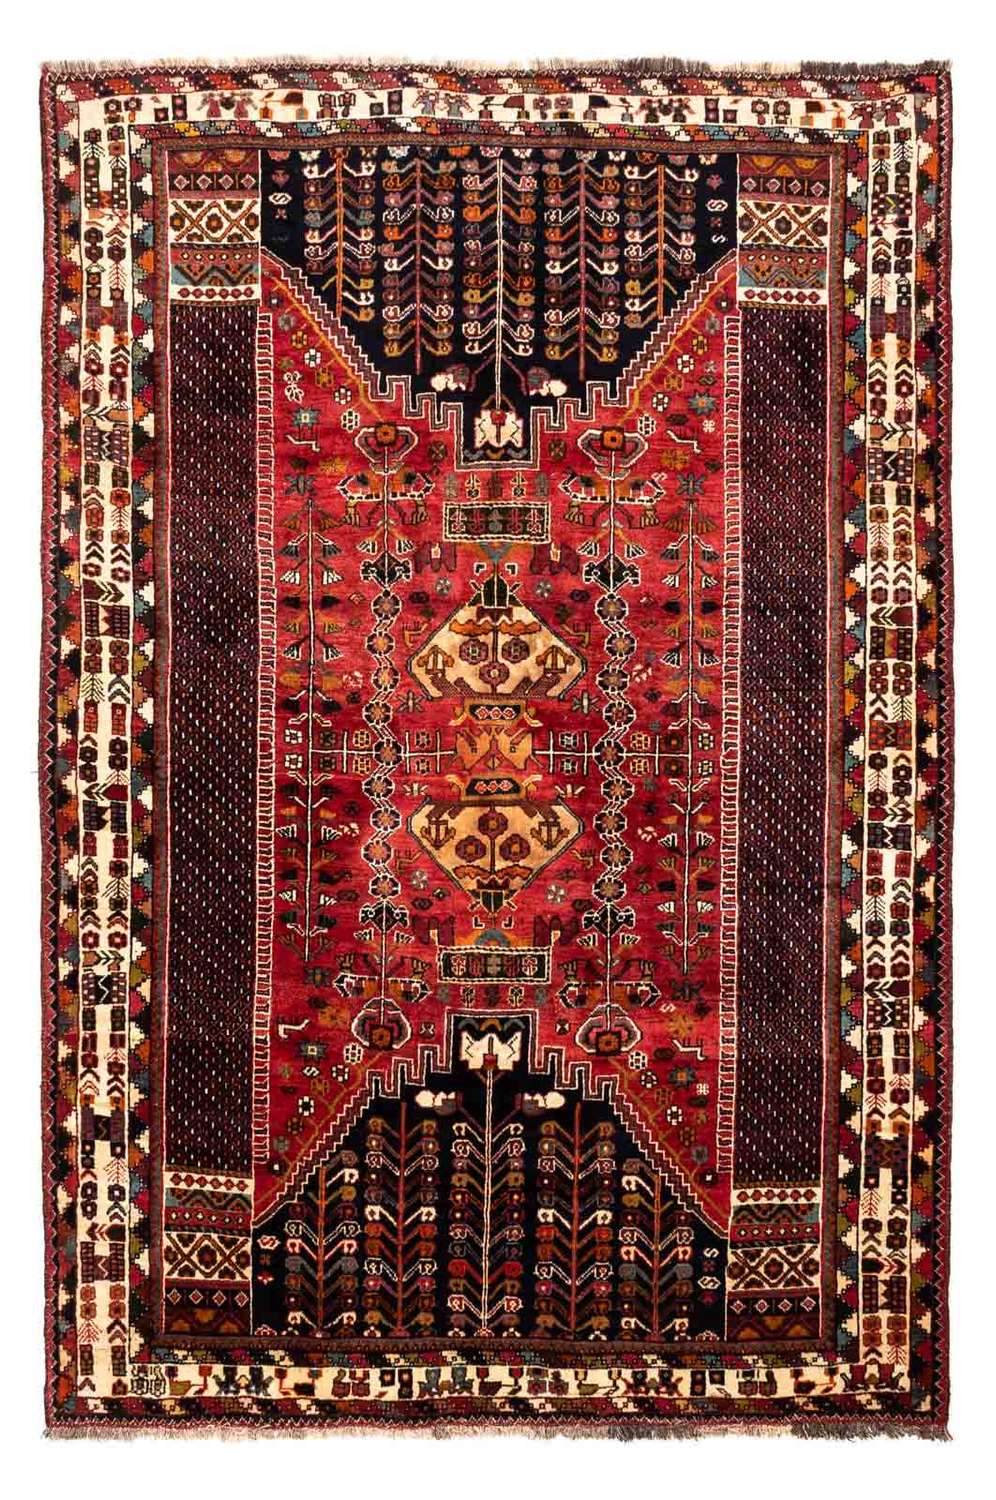 Tapete Persa - Nomadic - 255 x 175 cm - vermelho escuro